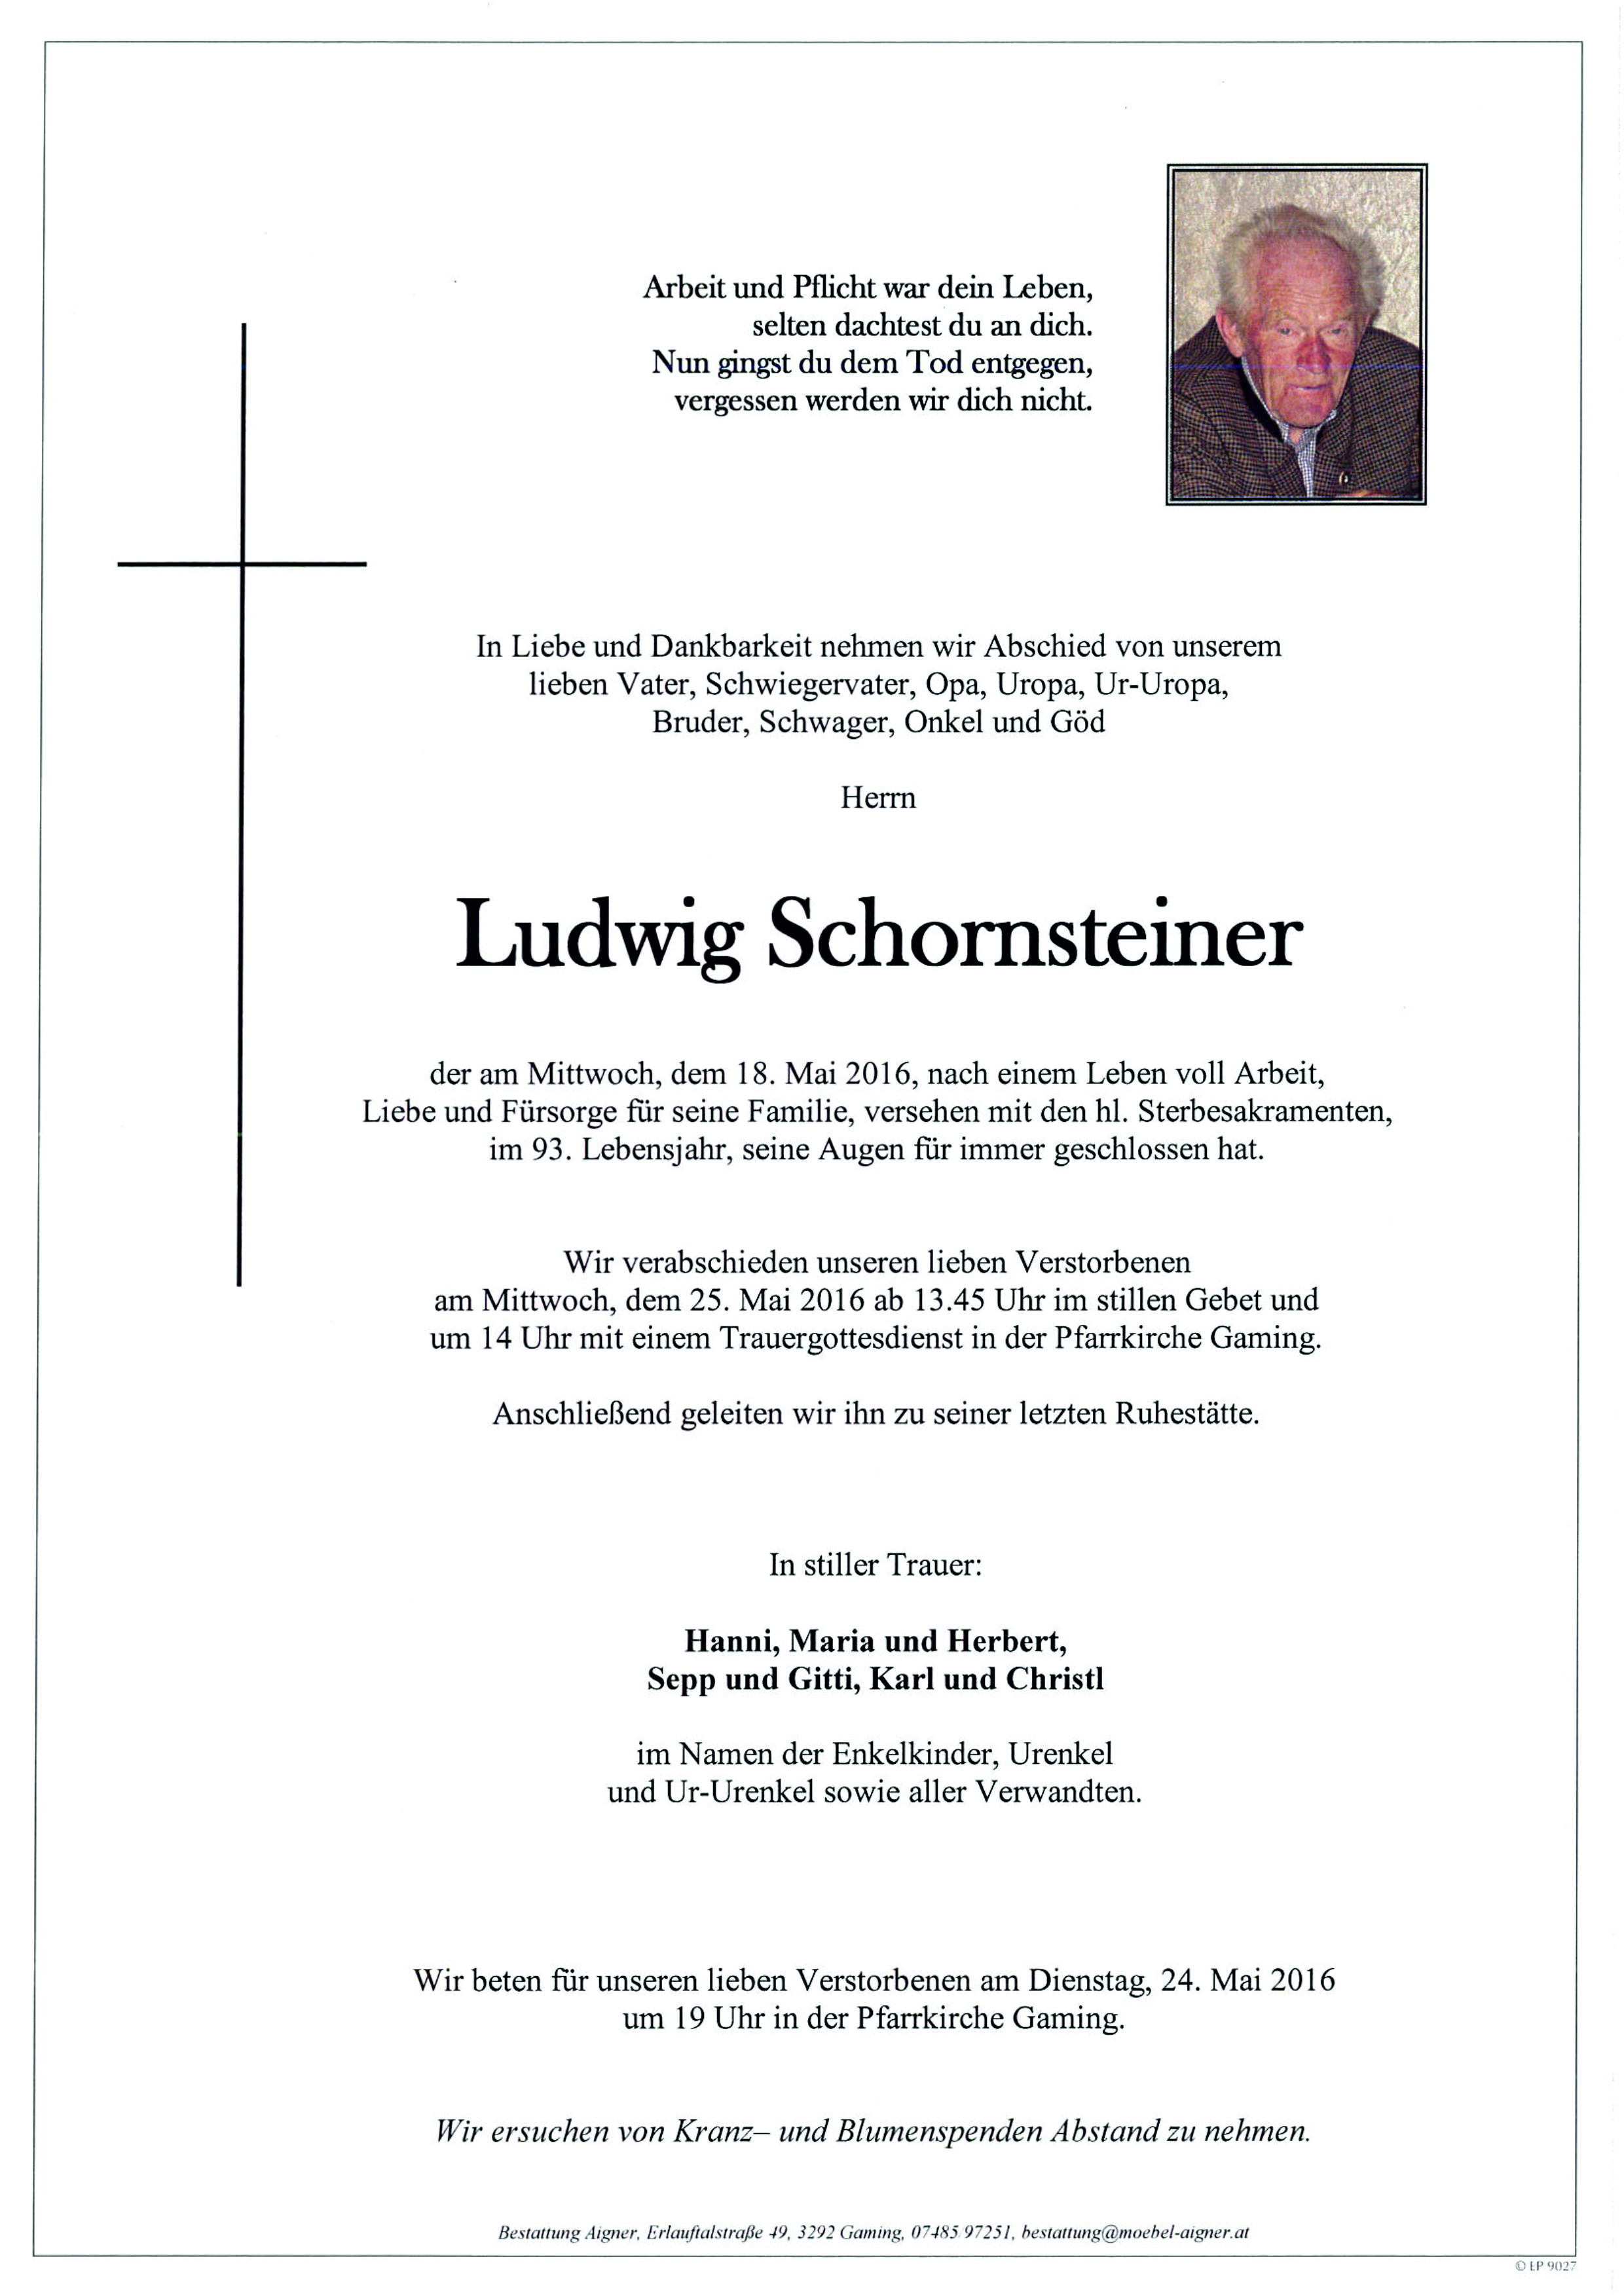 Ludwig Schornsteiner